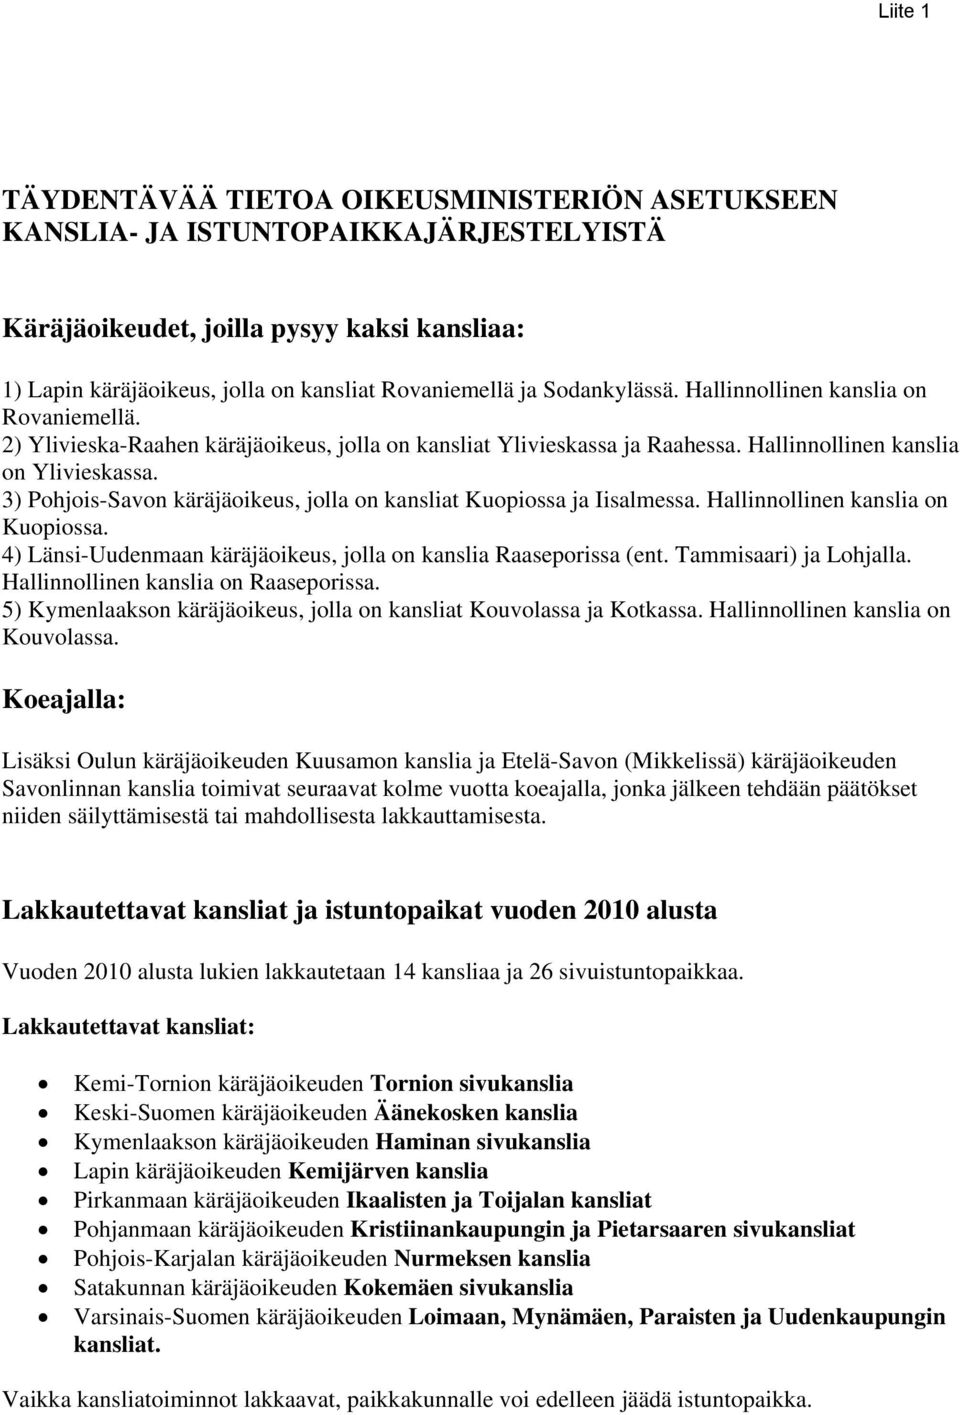 3) Pohjois-Savon käräjäoikeus, jolla on kansliat Kuopiossa ja Iisalmessa. Hallinnollinen kanslia on Kuopiossa. 4) Länsi-Uudenmaan käräjäoikeus, jolla on kanslia Raaseporissa (ent.